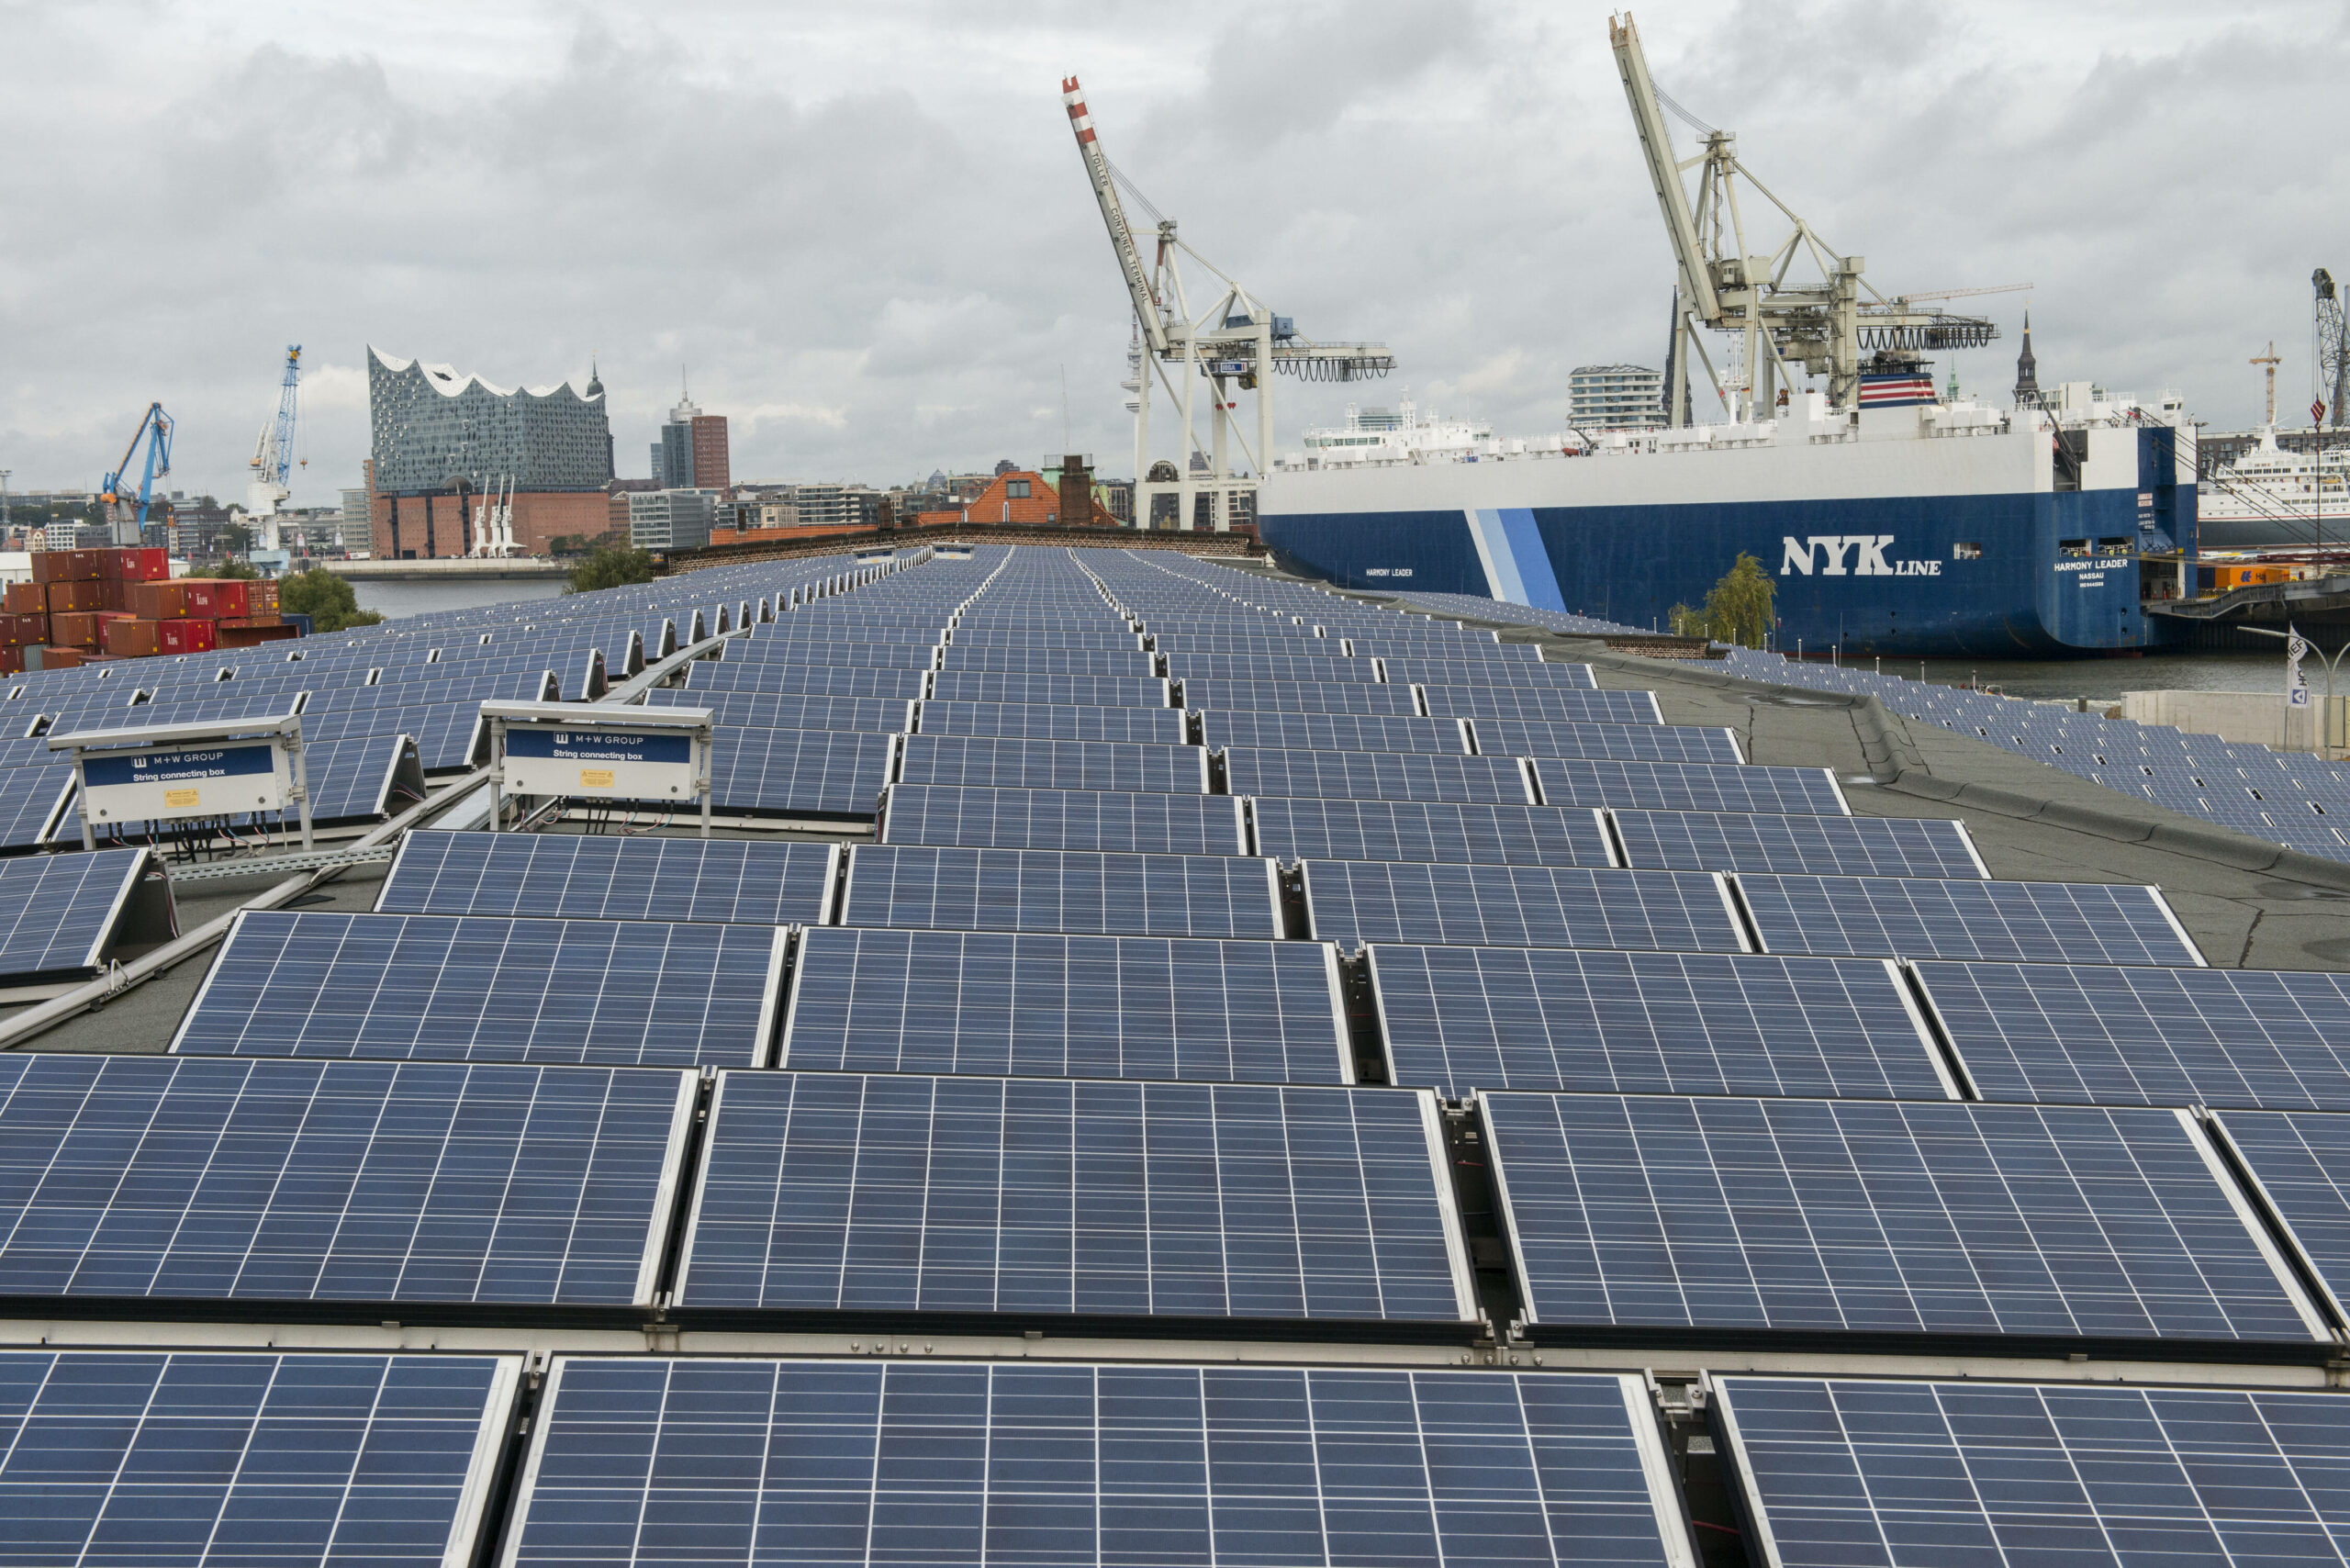 Solar-Paneele sind auf einem Dach eines Kaischuppens im Hamburger Hafen installiert. (Symbolbild)